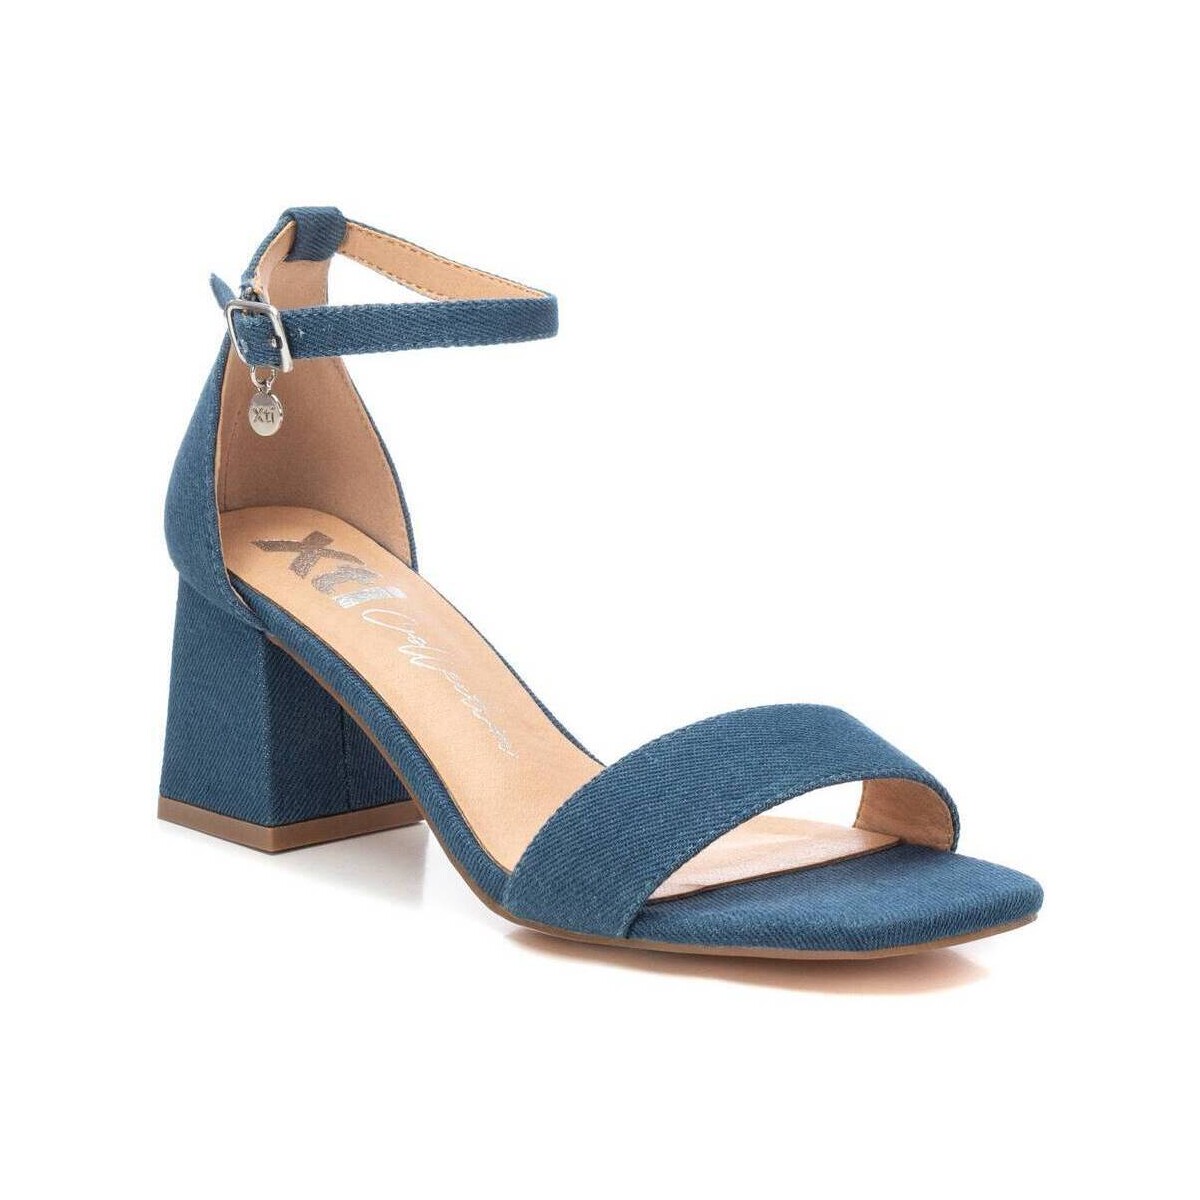 Chaussures Femme Sandales et Nu-pieds Xti 14266103 Bleu